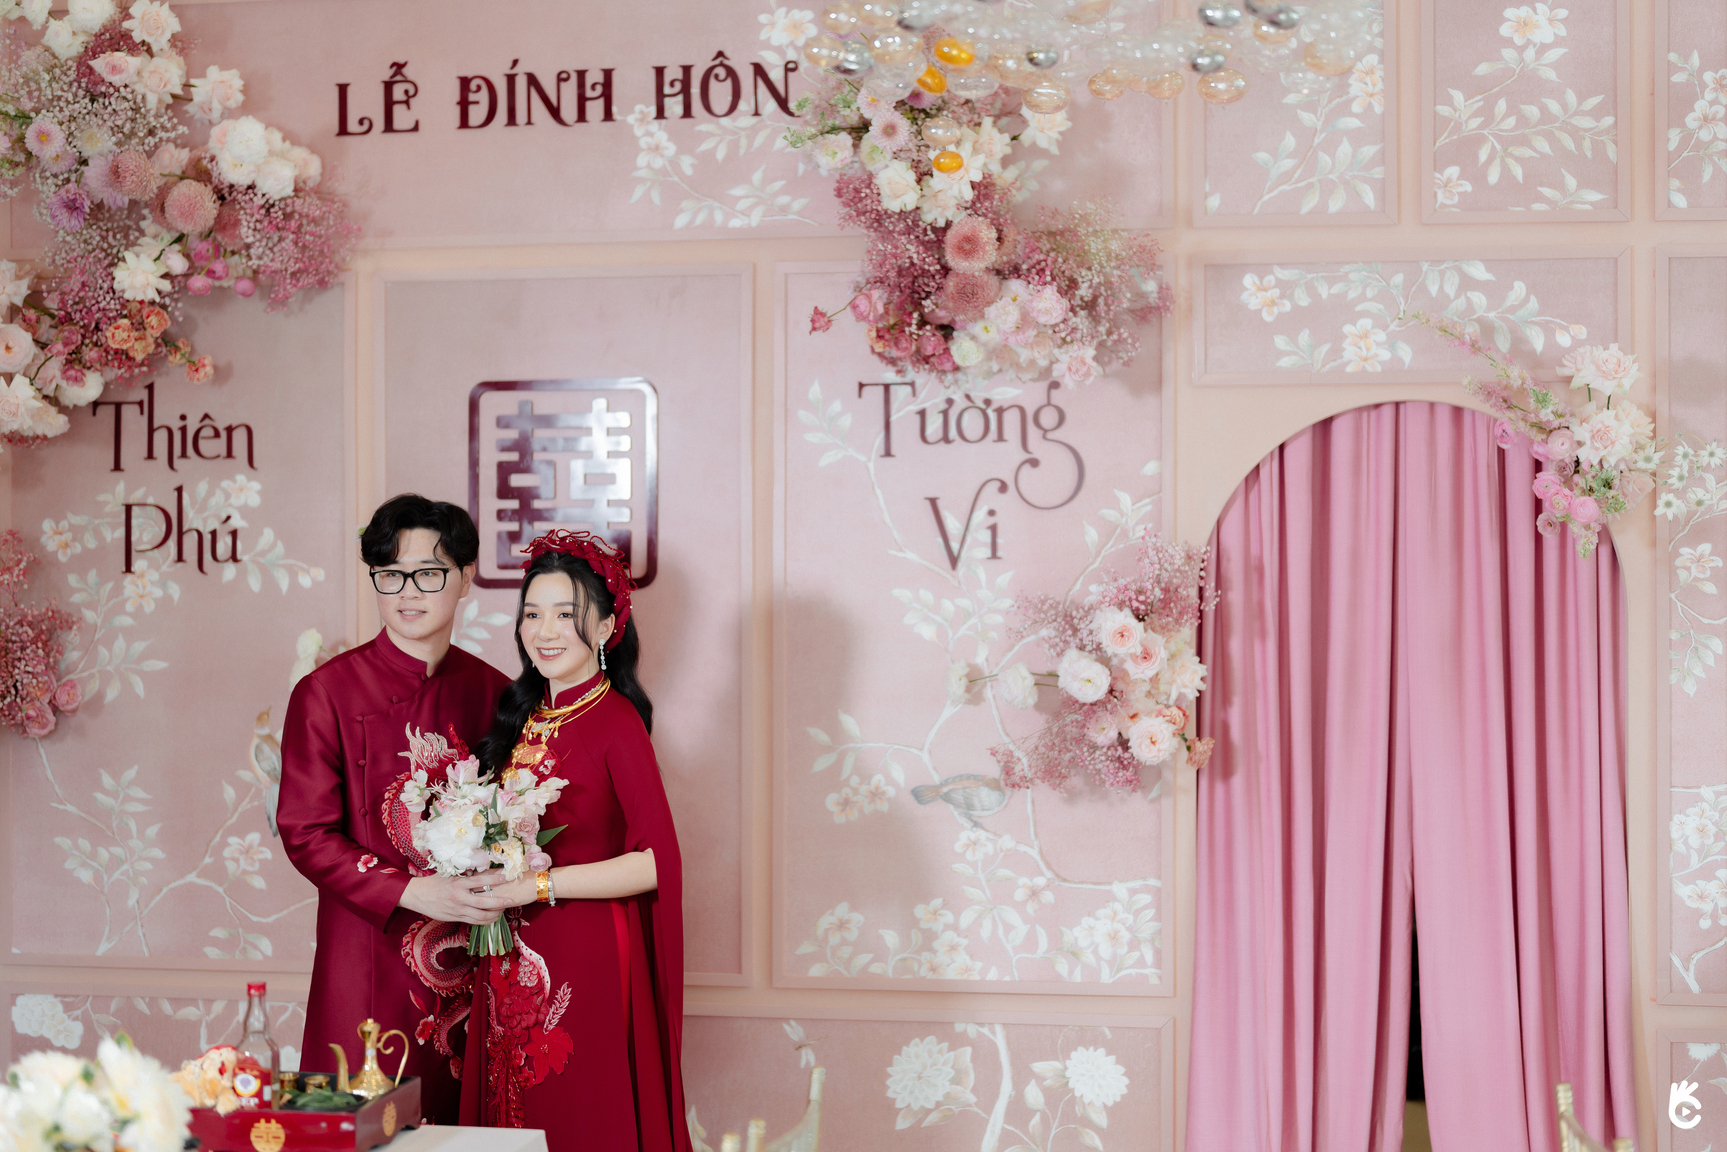 Lễ đính hôn tông hồng ở Sài Gòn